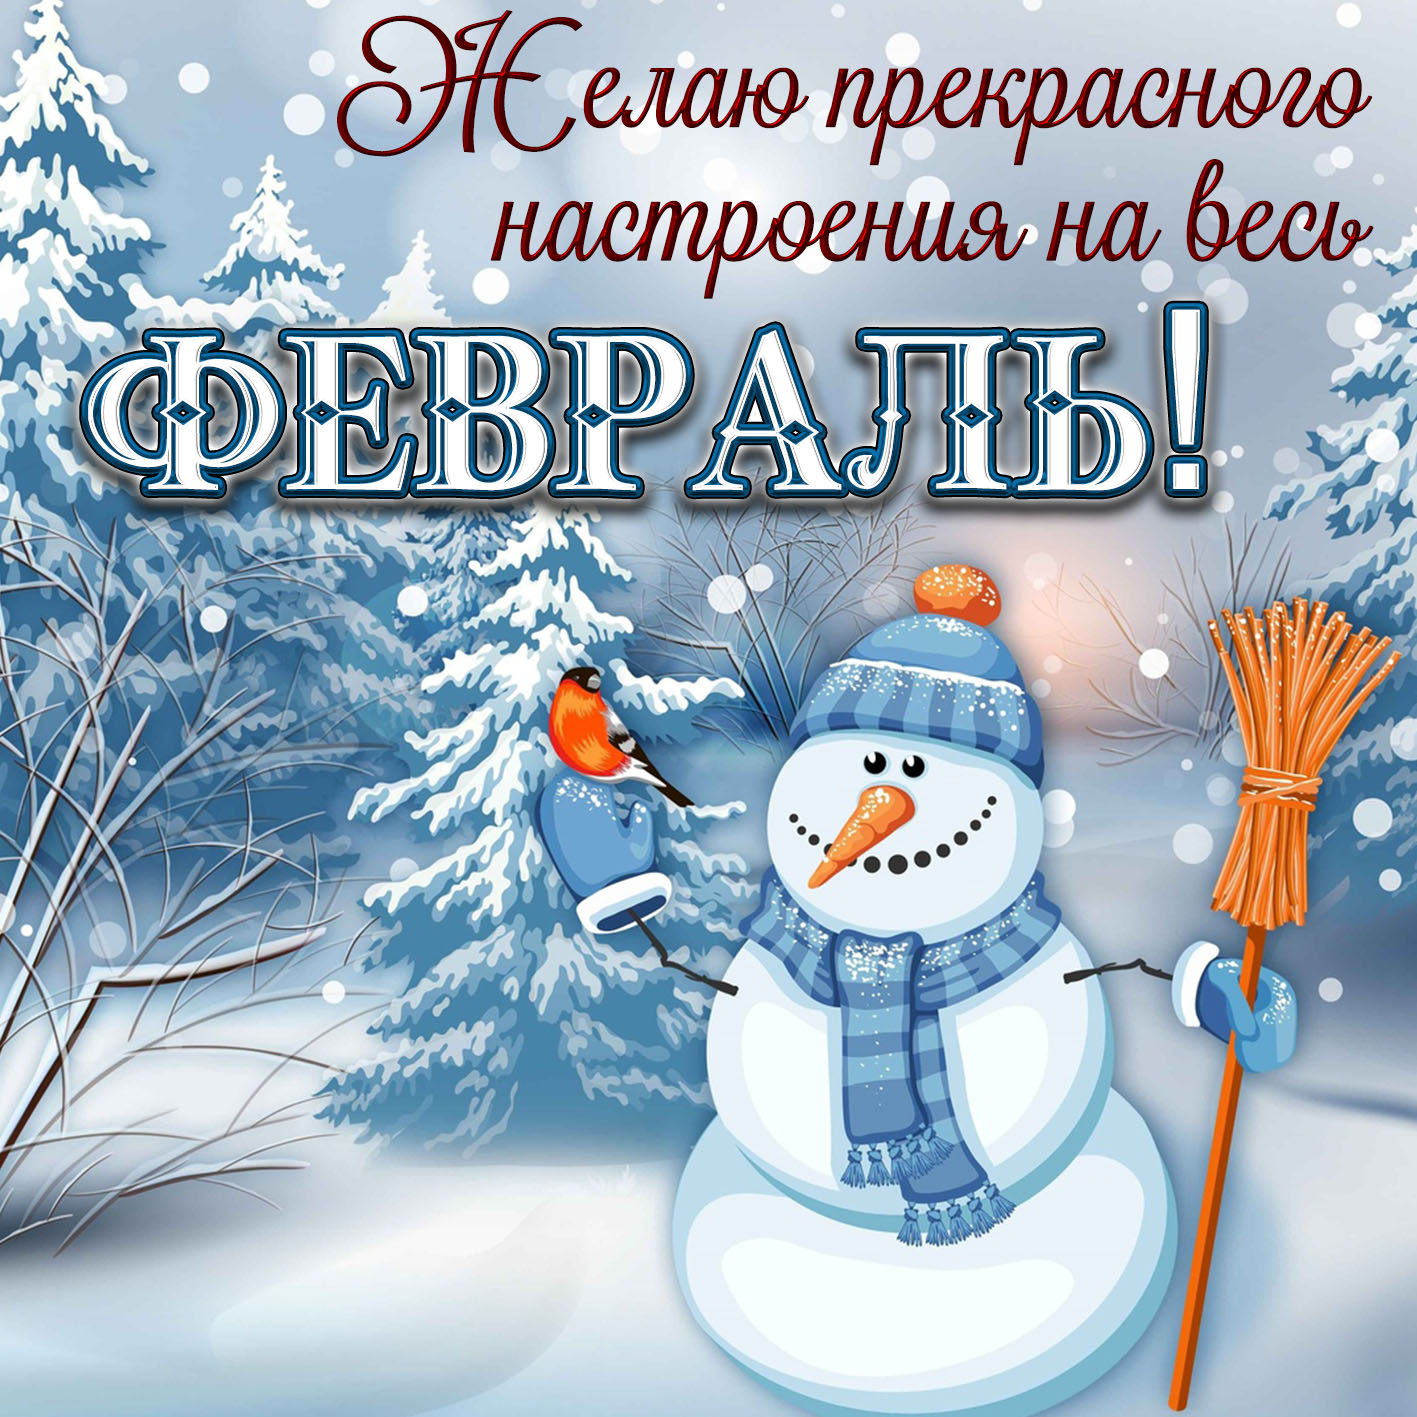 Пожелание нового зимнего дня. Зимние пожелания. Доброго зимнего дня. Хорошего зимнего настроения. Пожелания хорошего зимнего дня.